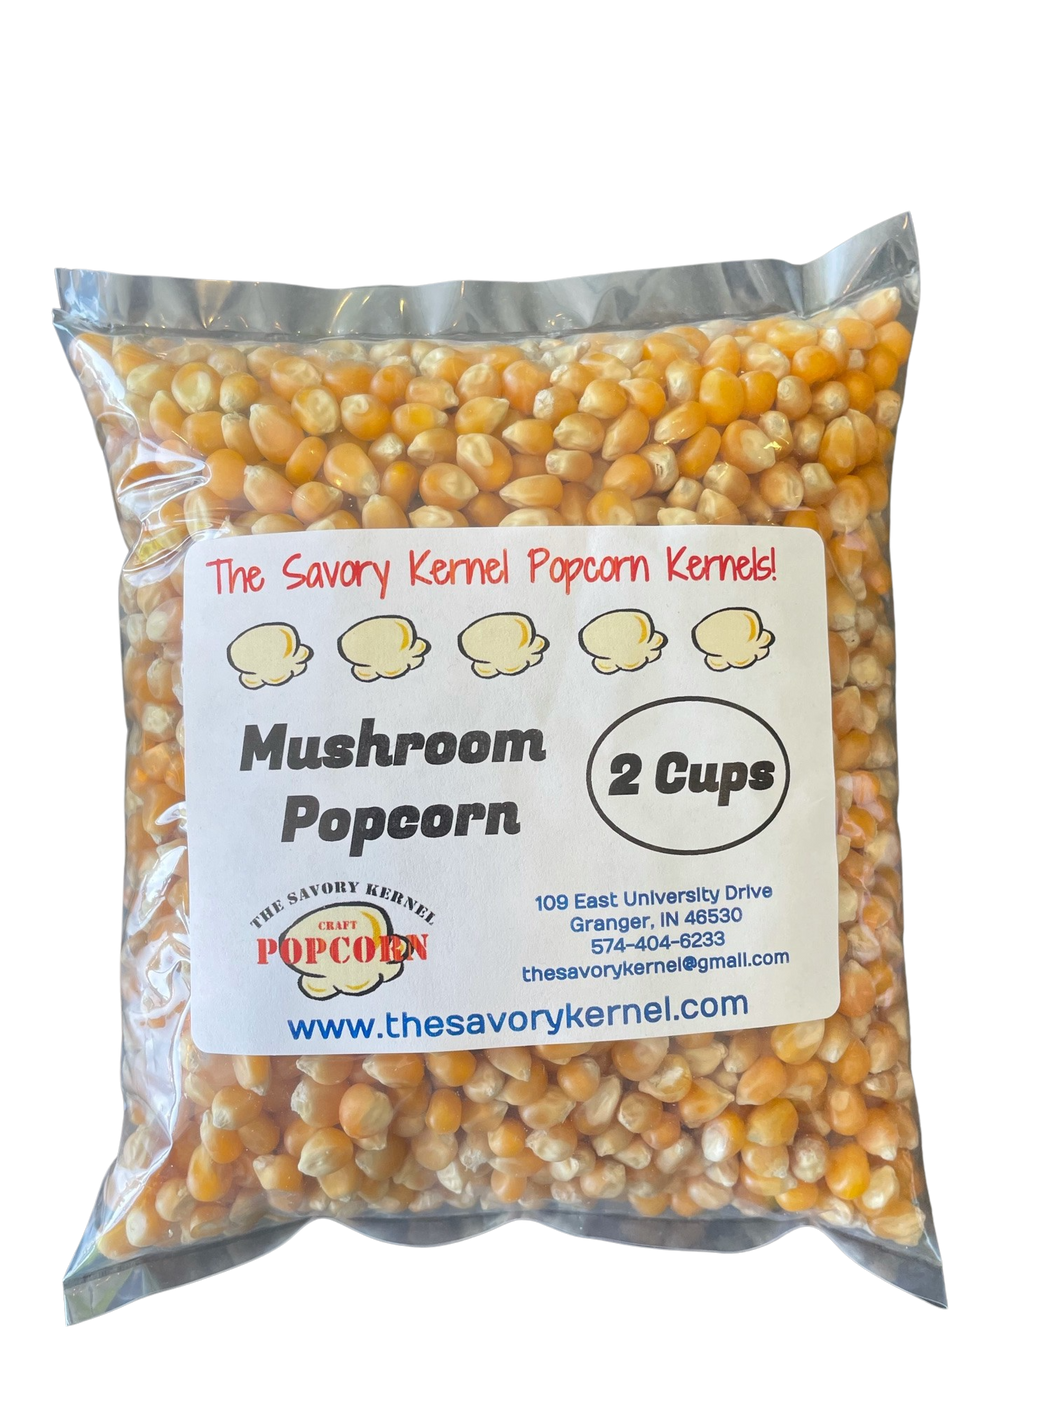 Popcorn Kernels - Mushroom type (Big Kernels!)